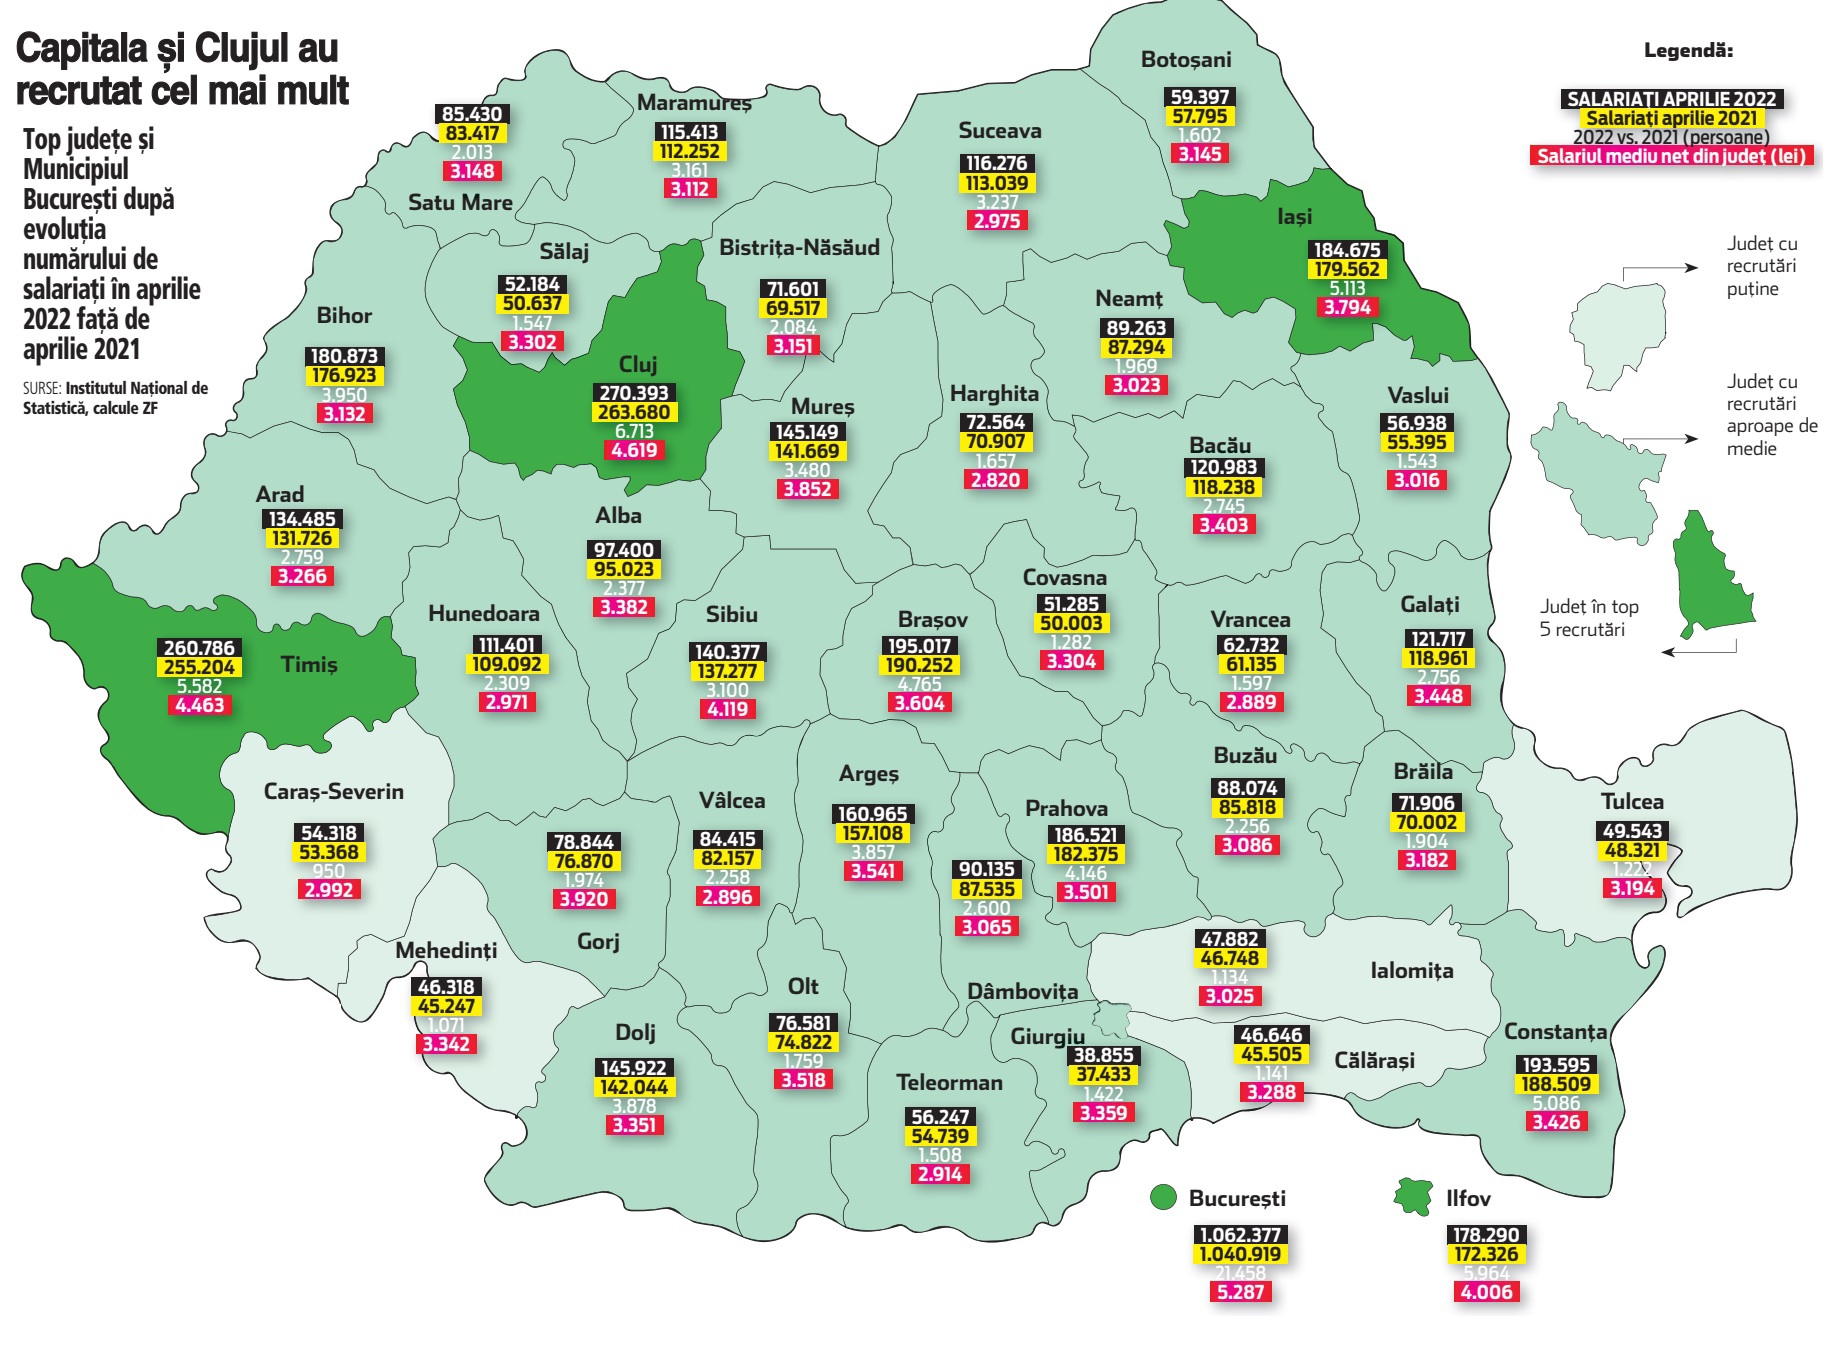 Harta recrutărilor din România, pe judeţe. Liderii clasamentului, Bucureşti - Ilfov, Cluj şi Timiş, au atras au atras aproape 40.000 de noi angajaţi în ultimul an. Capitala se îndreaptă spre un număr de 1,1 milioane de salariaţi, Clujul a depăşit 270.000, iar în Timiş lucrează 260.000 de oameni